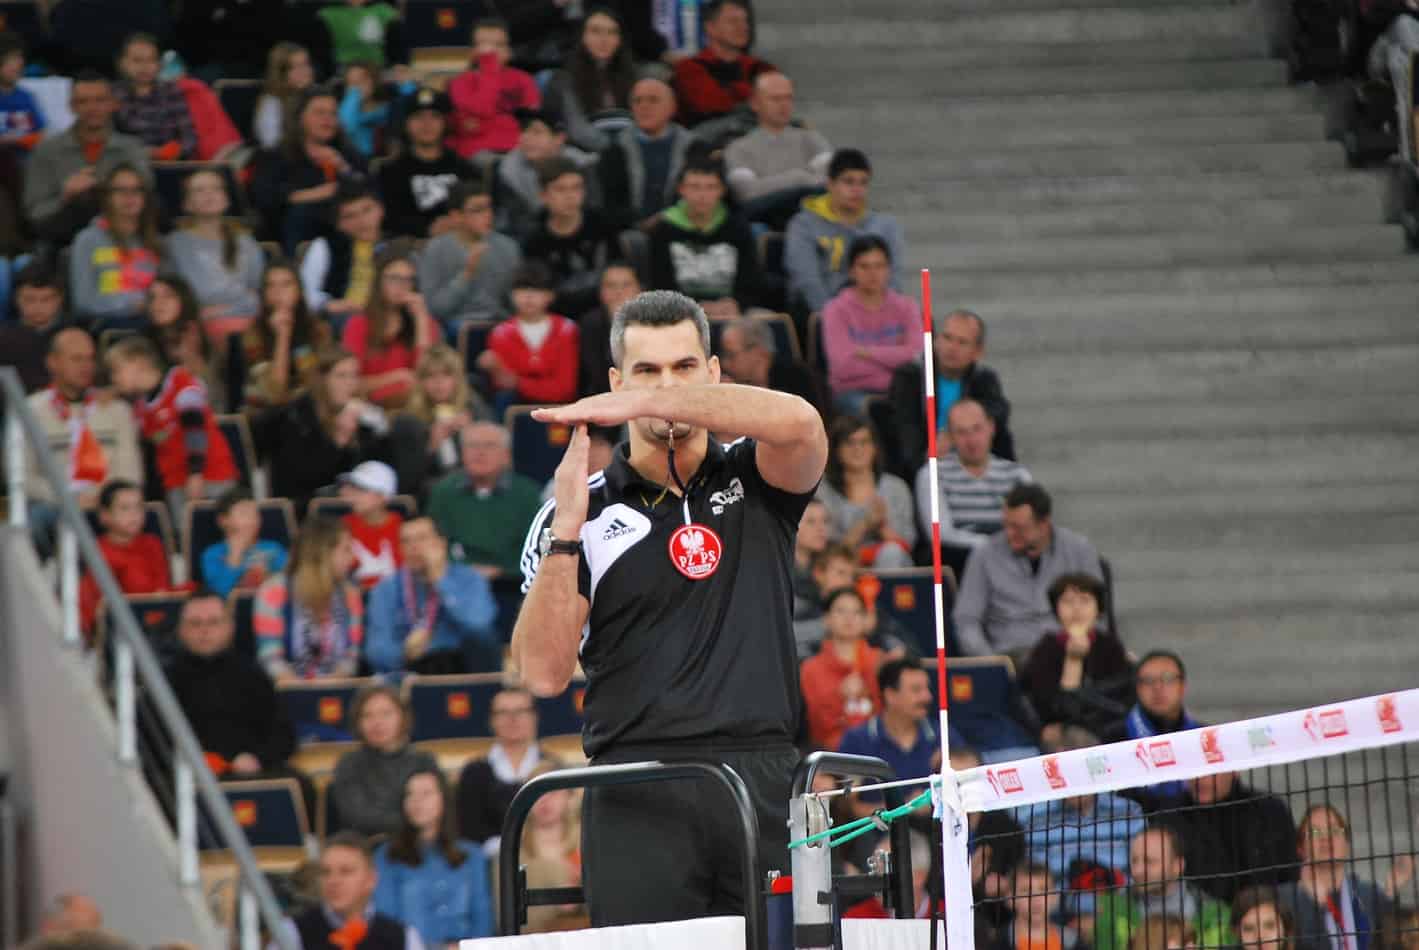 ref volleyball hand signals